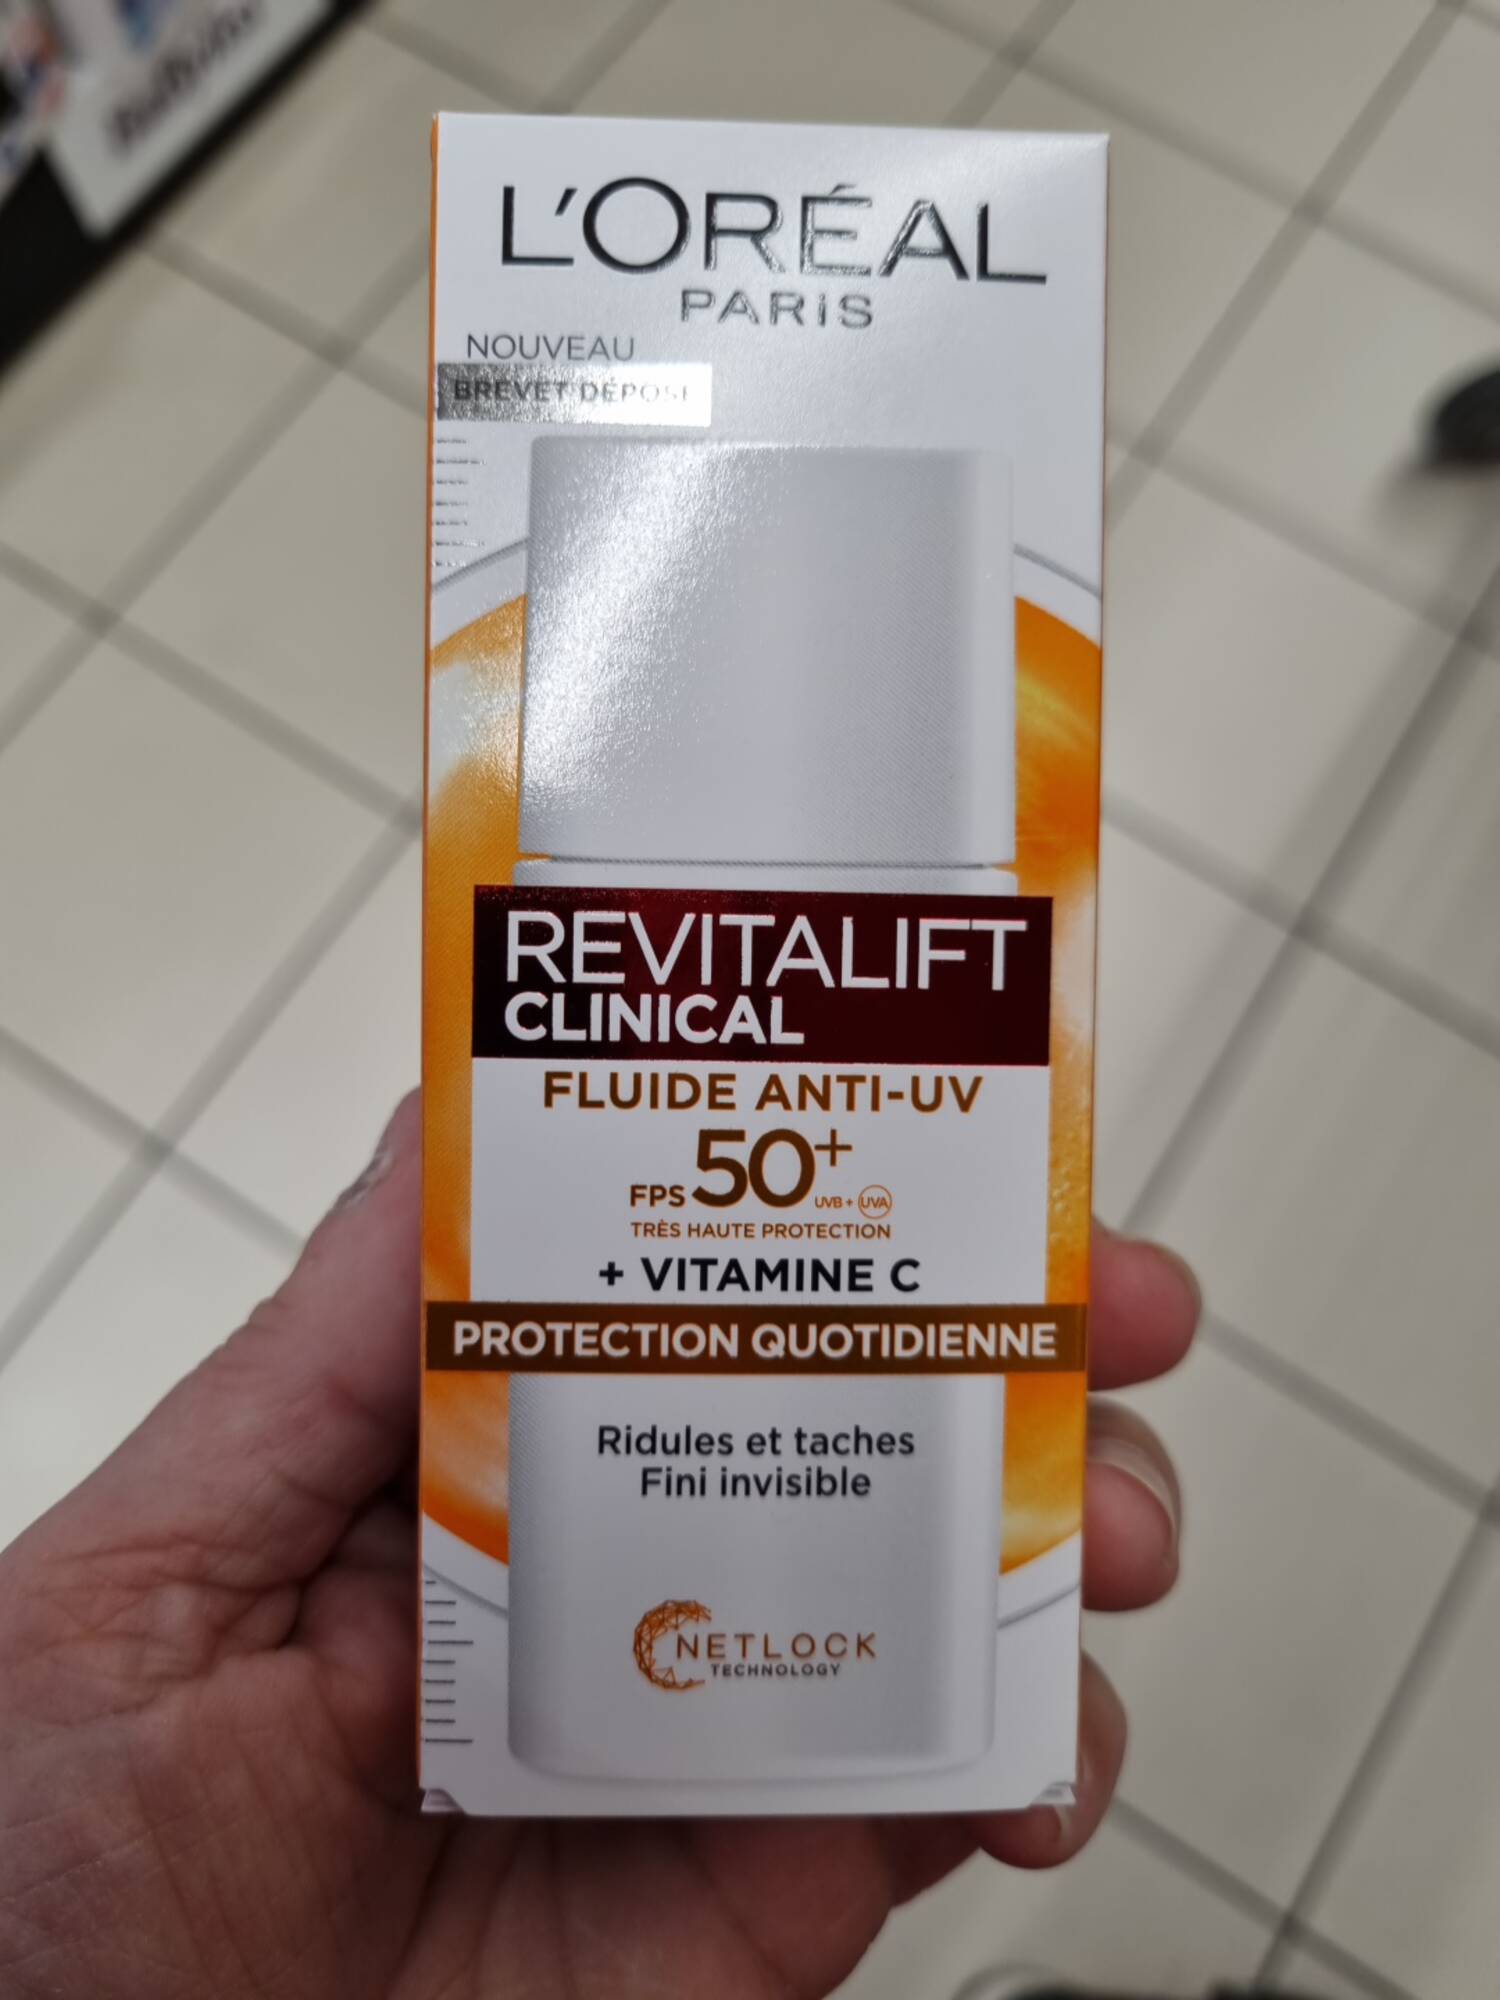 L'ORÉAL PARIS - Revitalift clinical - Fluide anti-uv FPS 50+